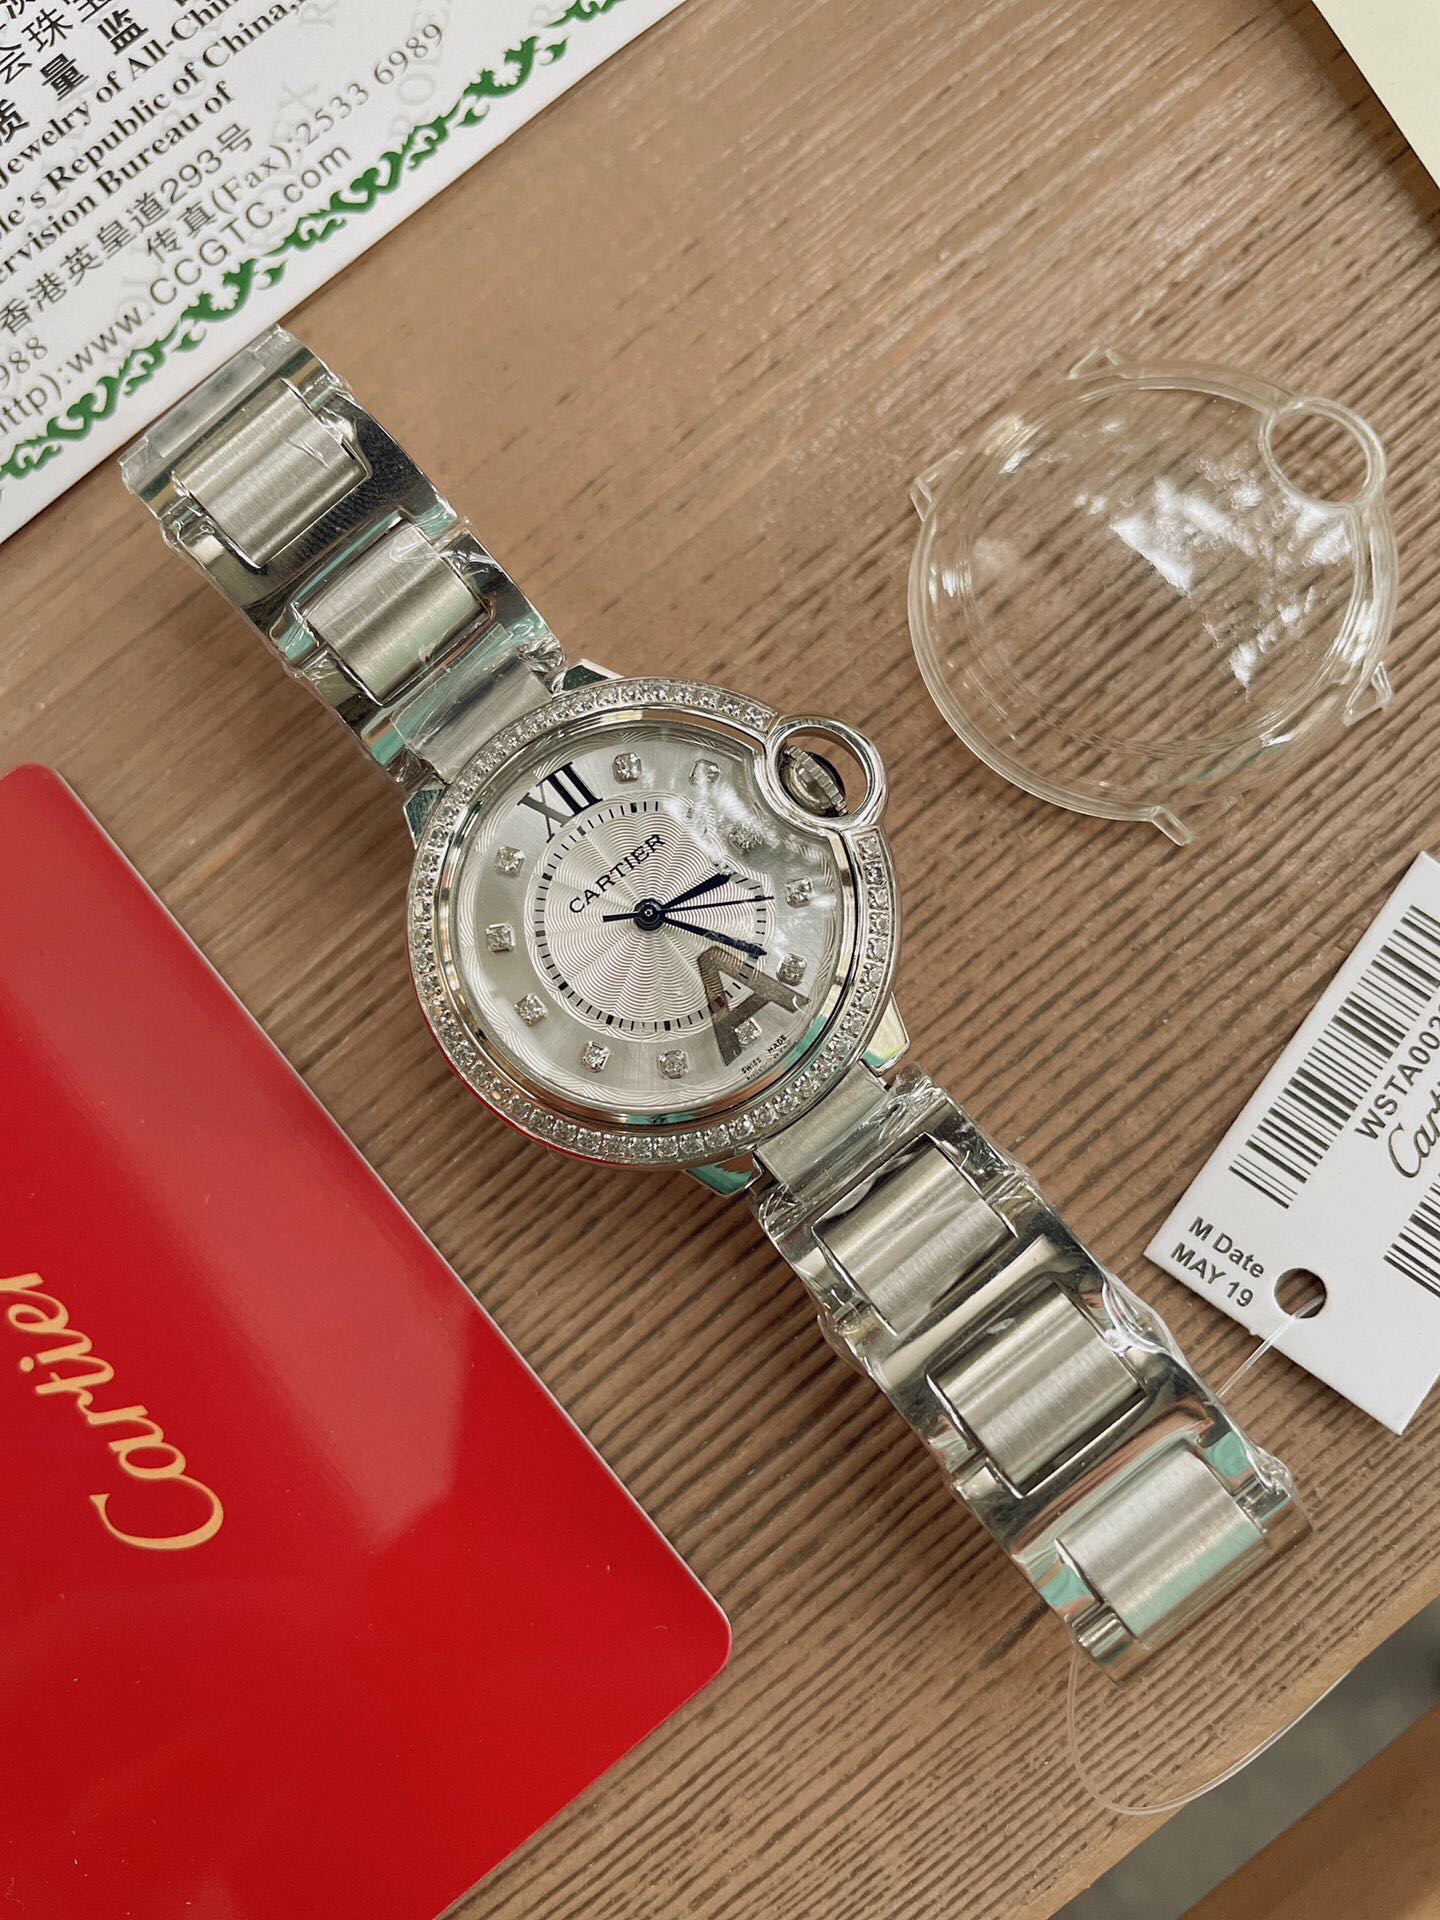 「ダイヤモンドなし」CARTIERカルティエ 時計 中身コピー フランス 薄い腕時計 軽量 レディース 最新商品 _6